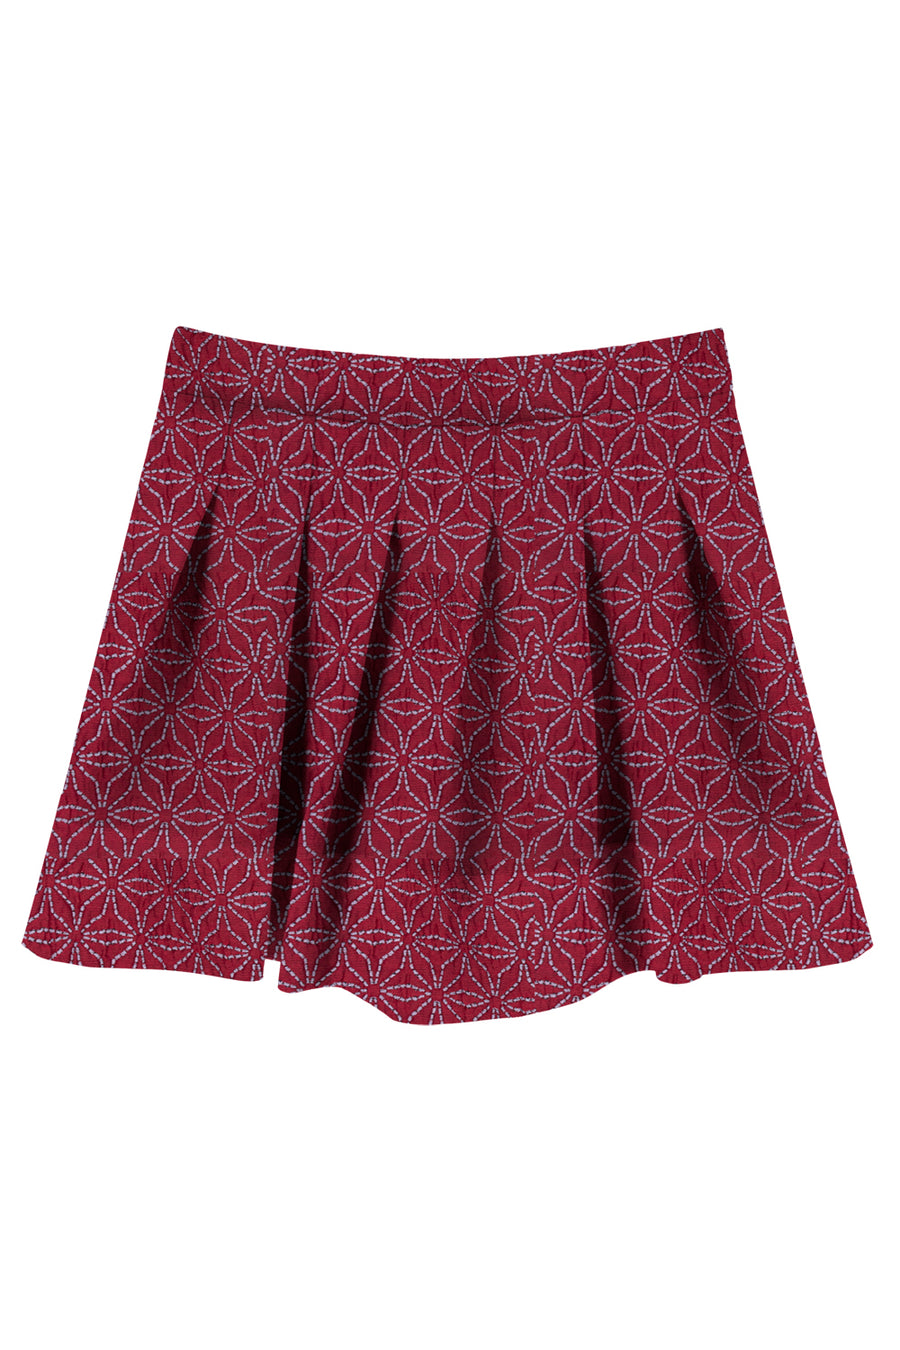 Bordeaux skirt by Mimisol